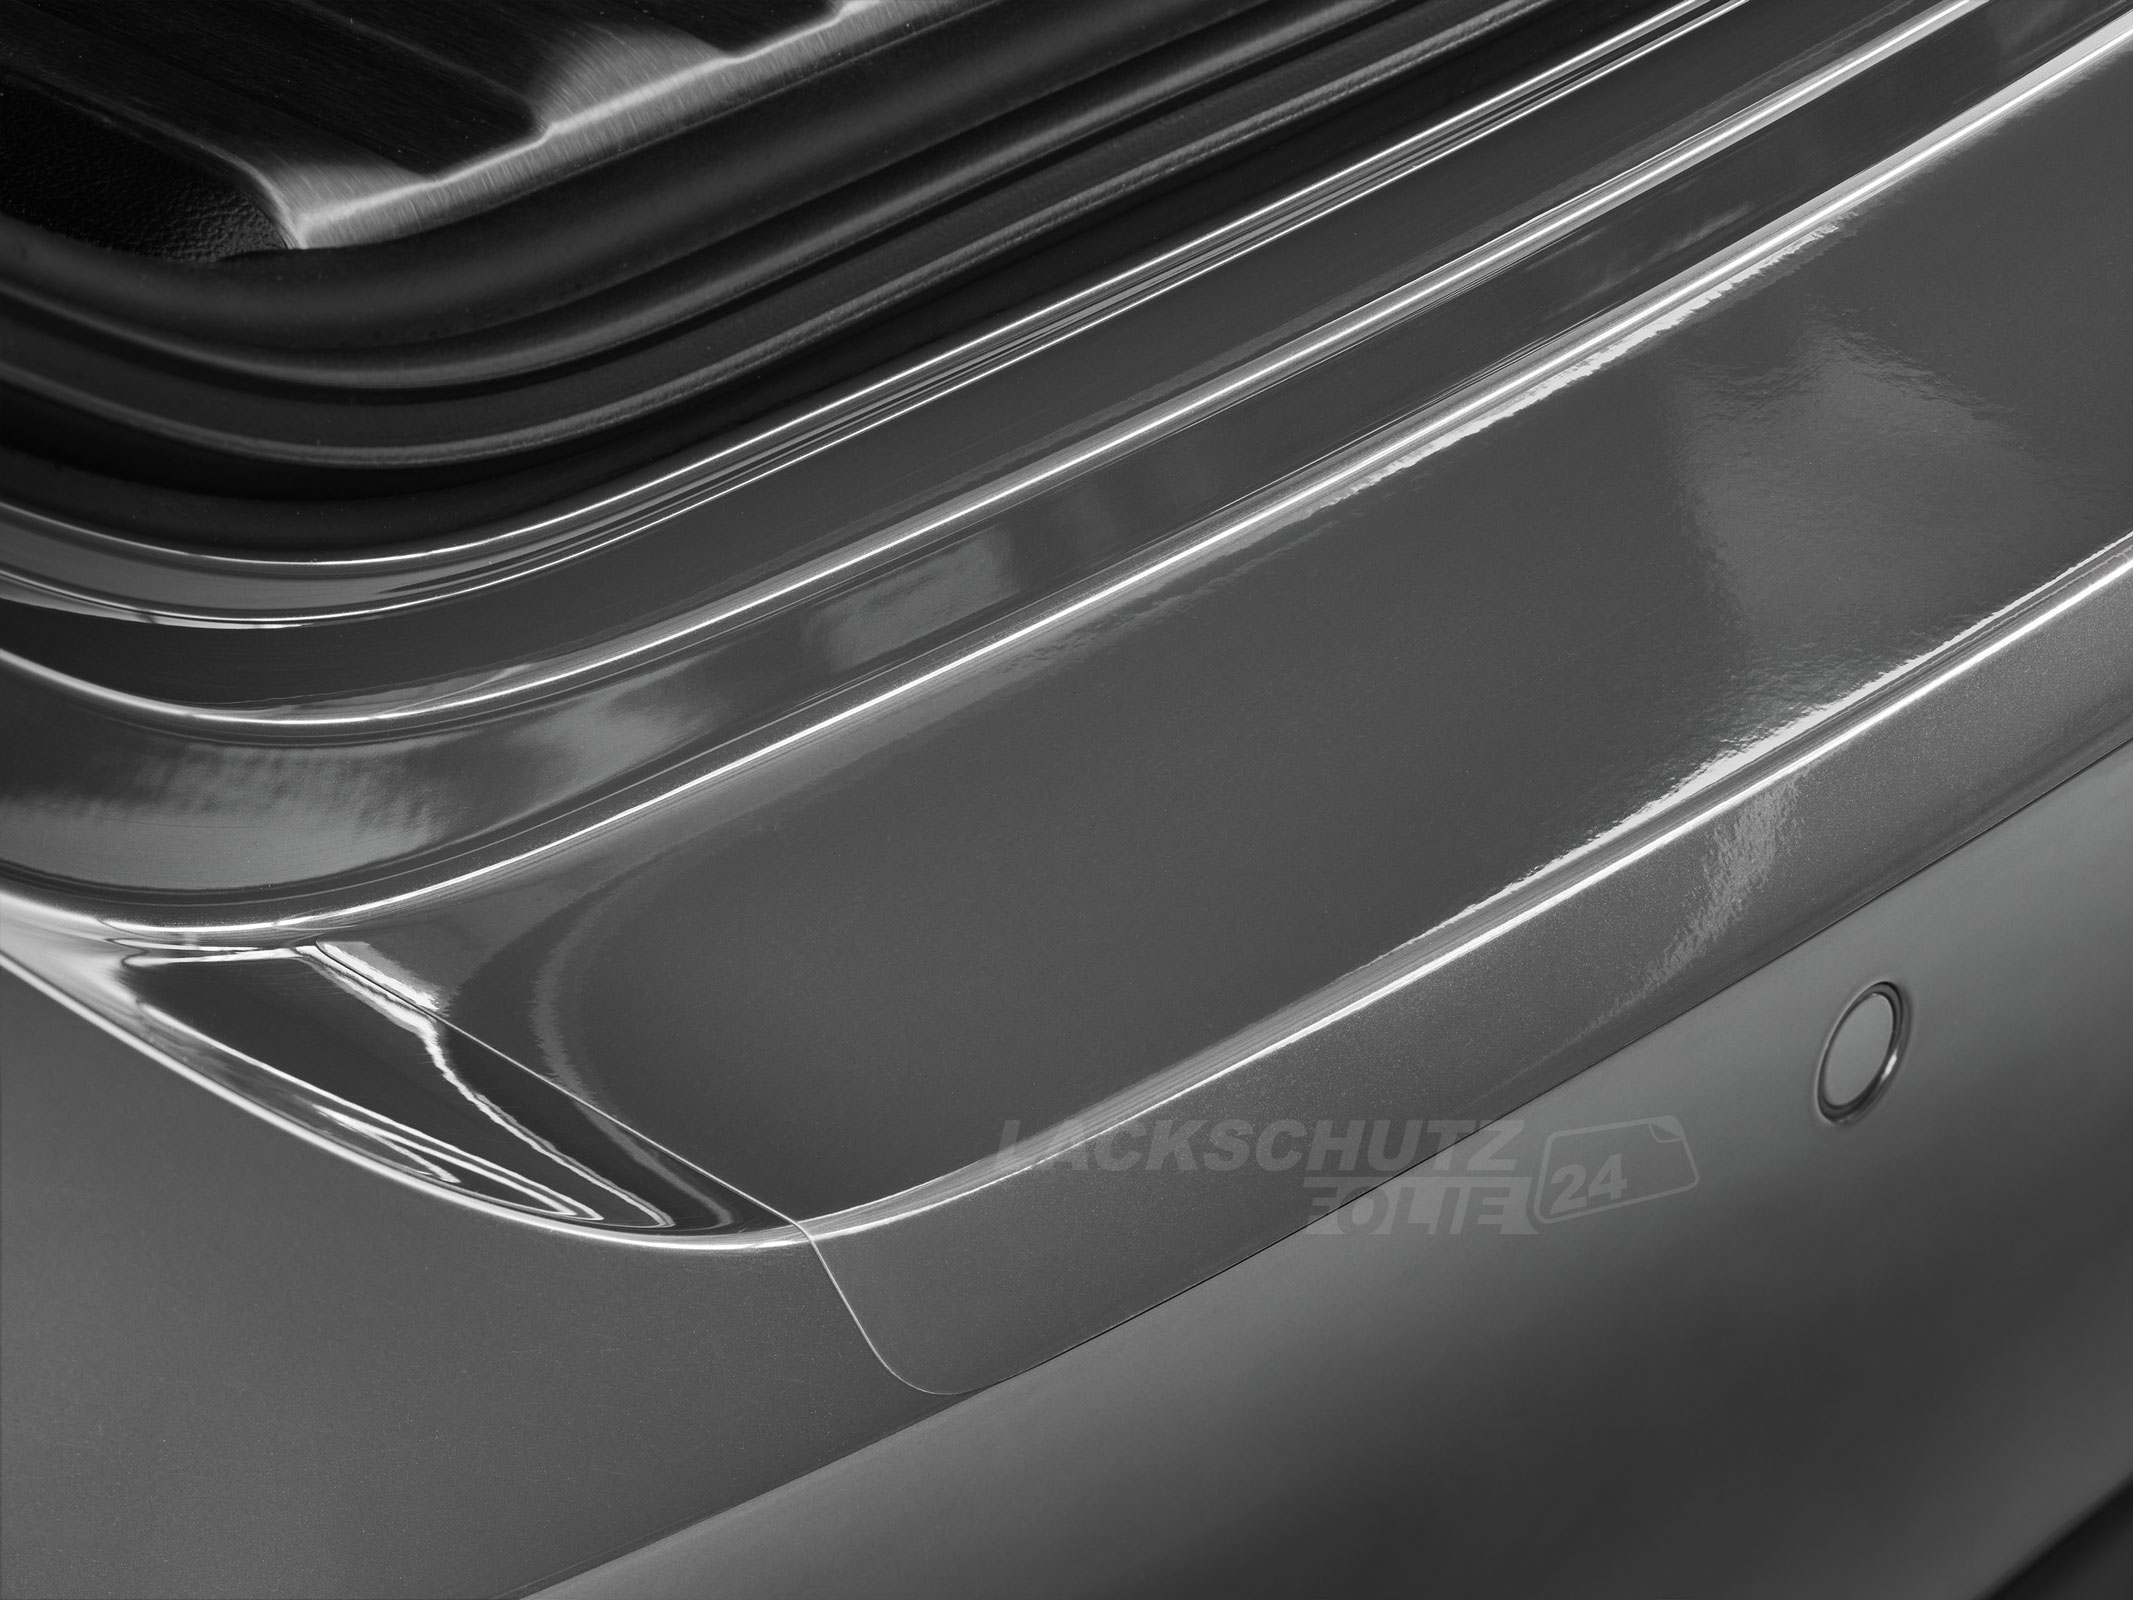 Ladekantenschutzfolie - Transparent Glatt Hochglänzend 150 µm stark für Citroen C4 Aircross ab BJ 2012